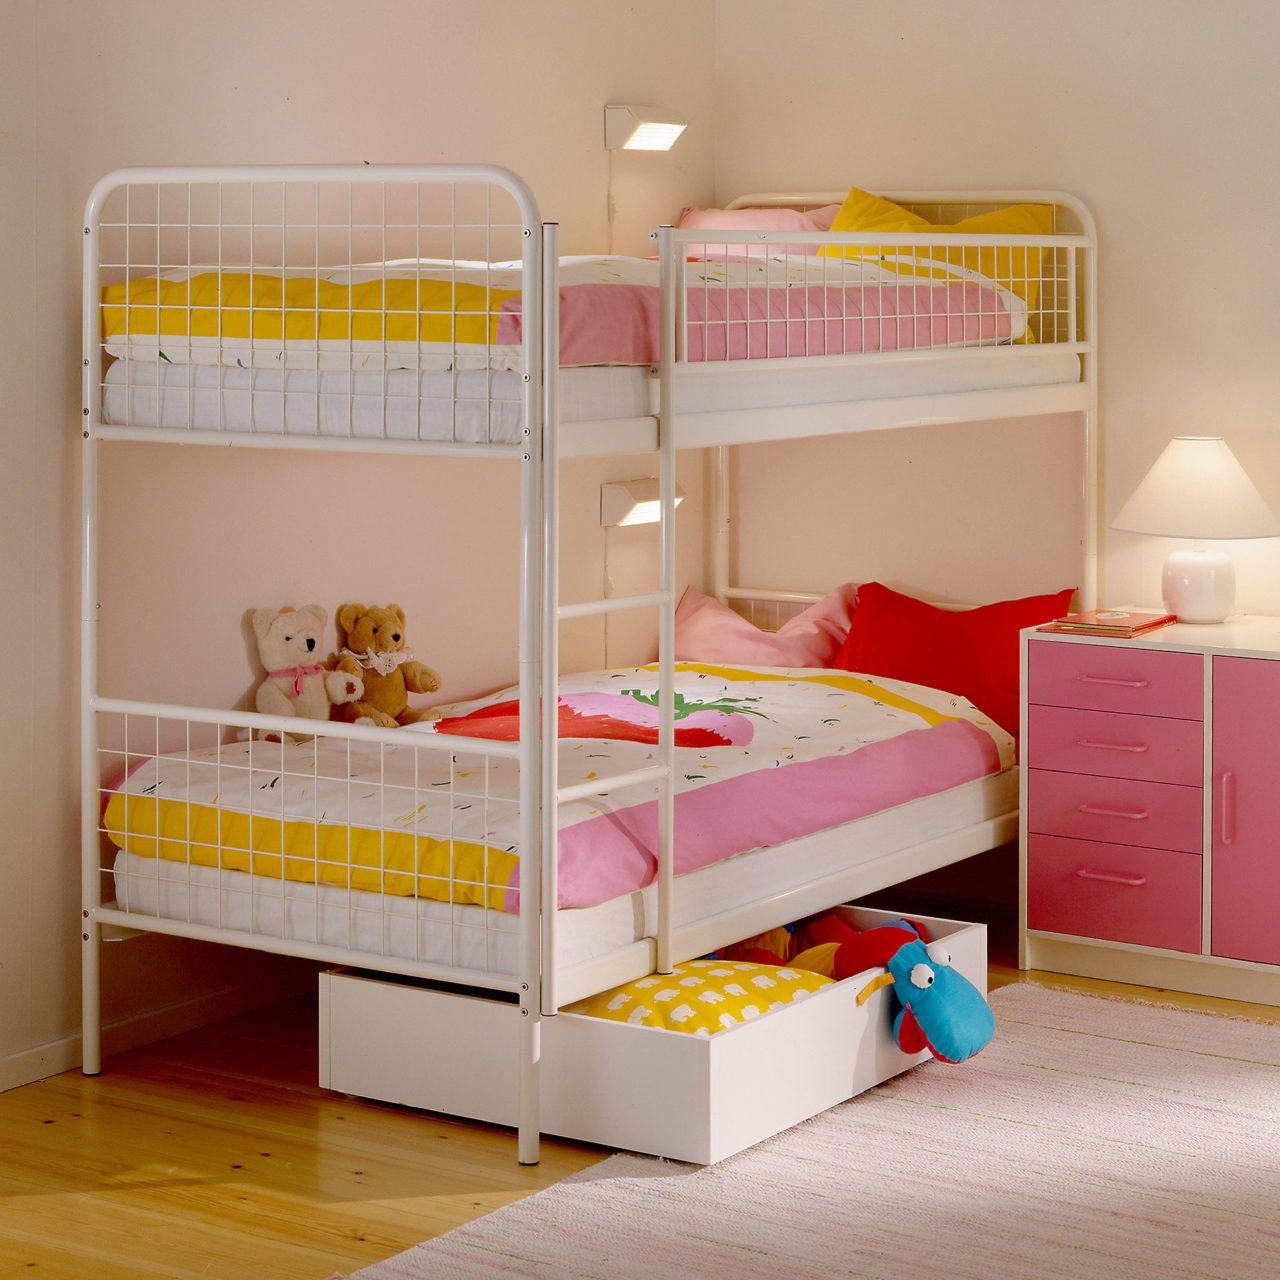 Cuarto infantil: litera MALM recogida, muebles y diversos detalles, todo ello en color rosa, amarillo y blanco.